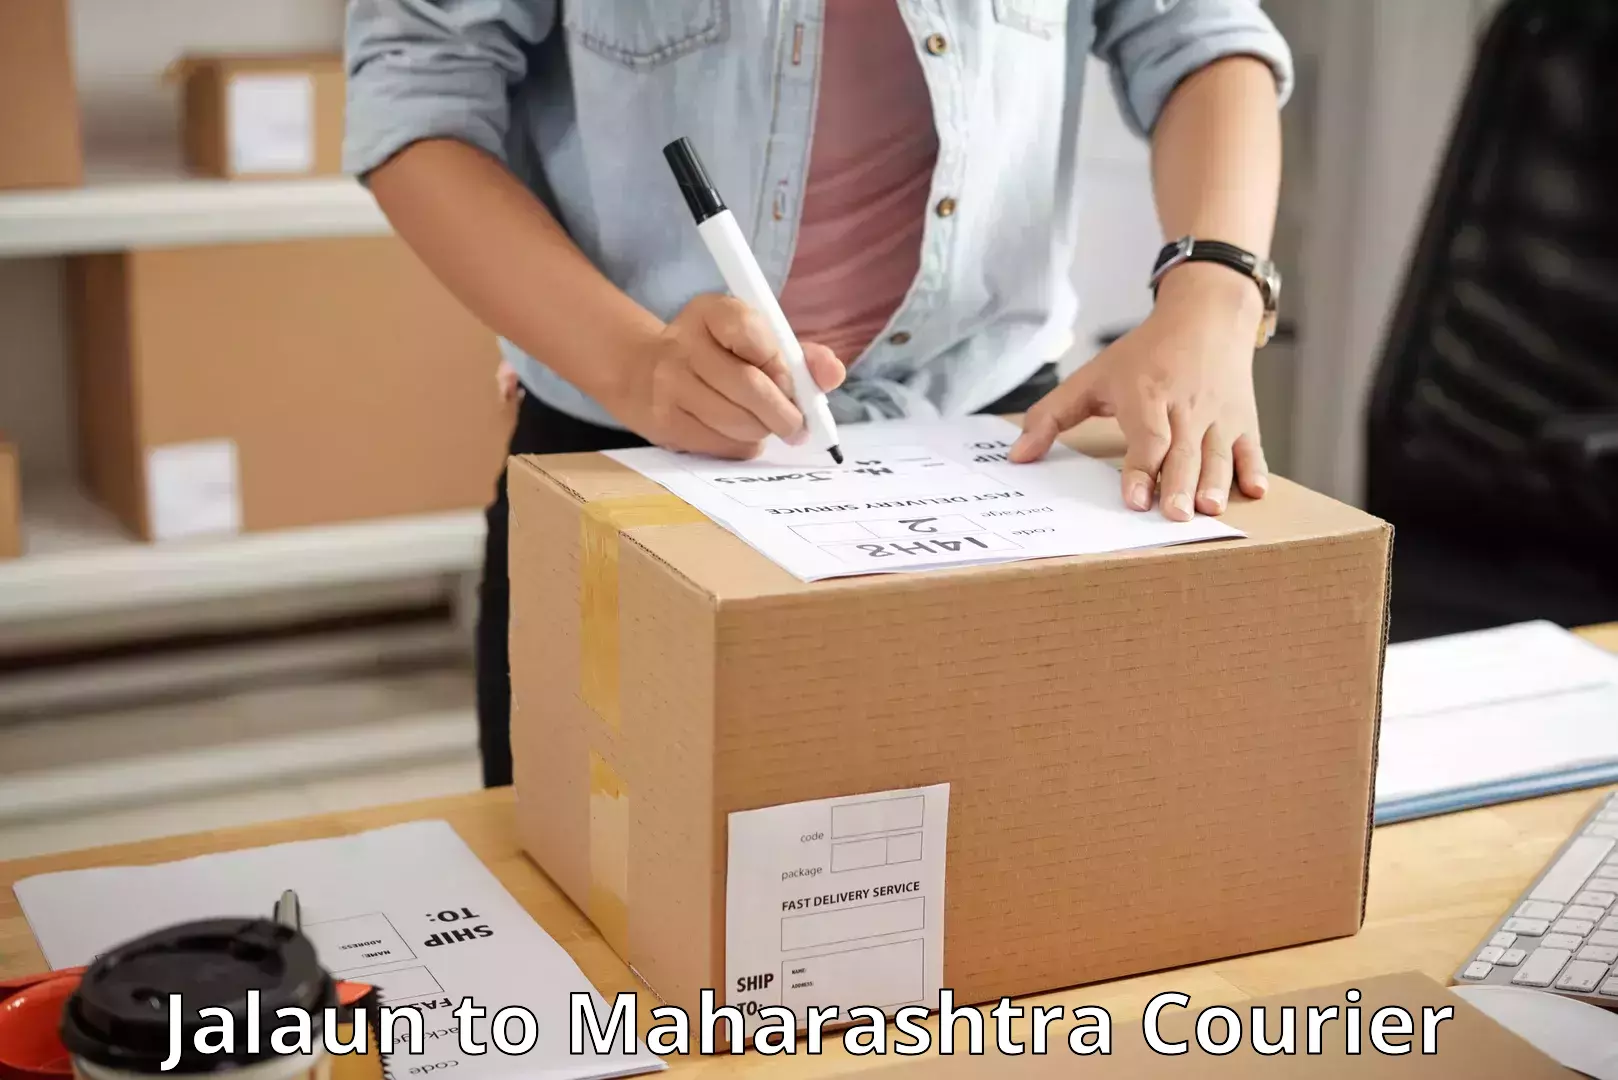 Courier insurance Jalaun to Mumbai